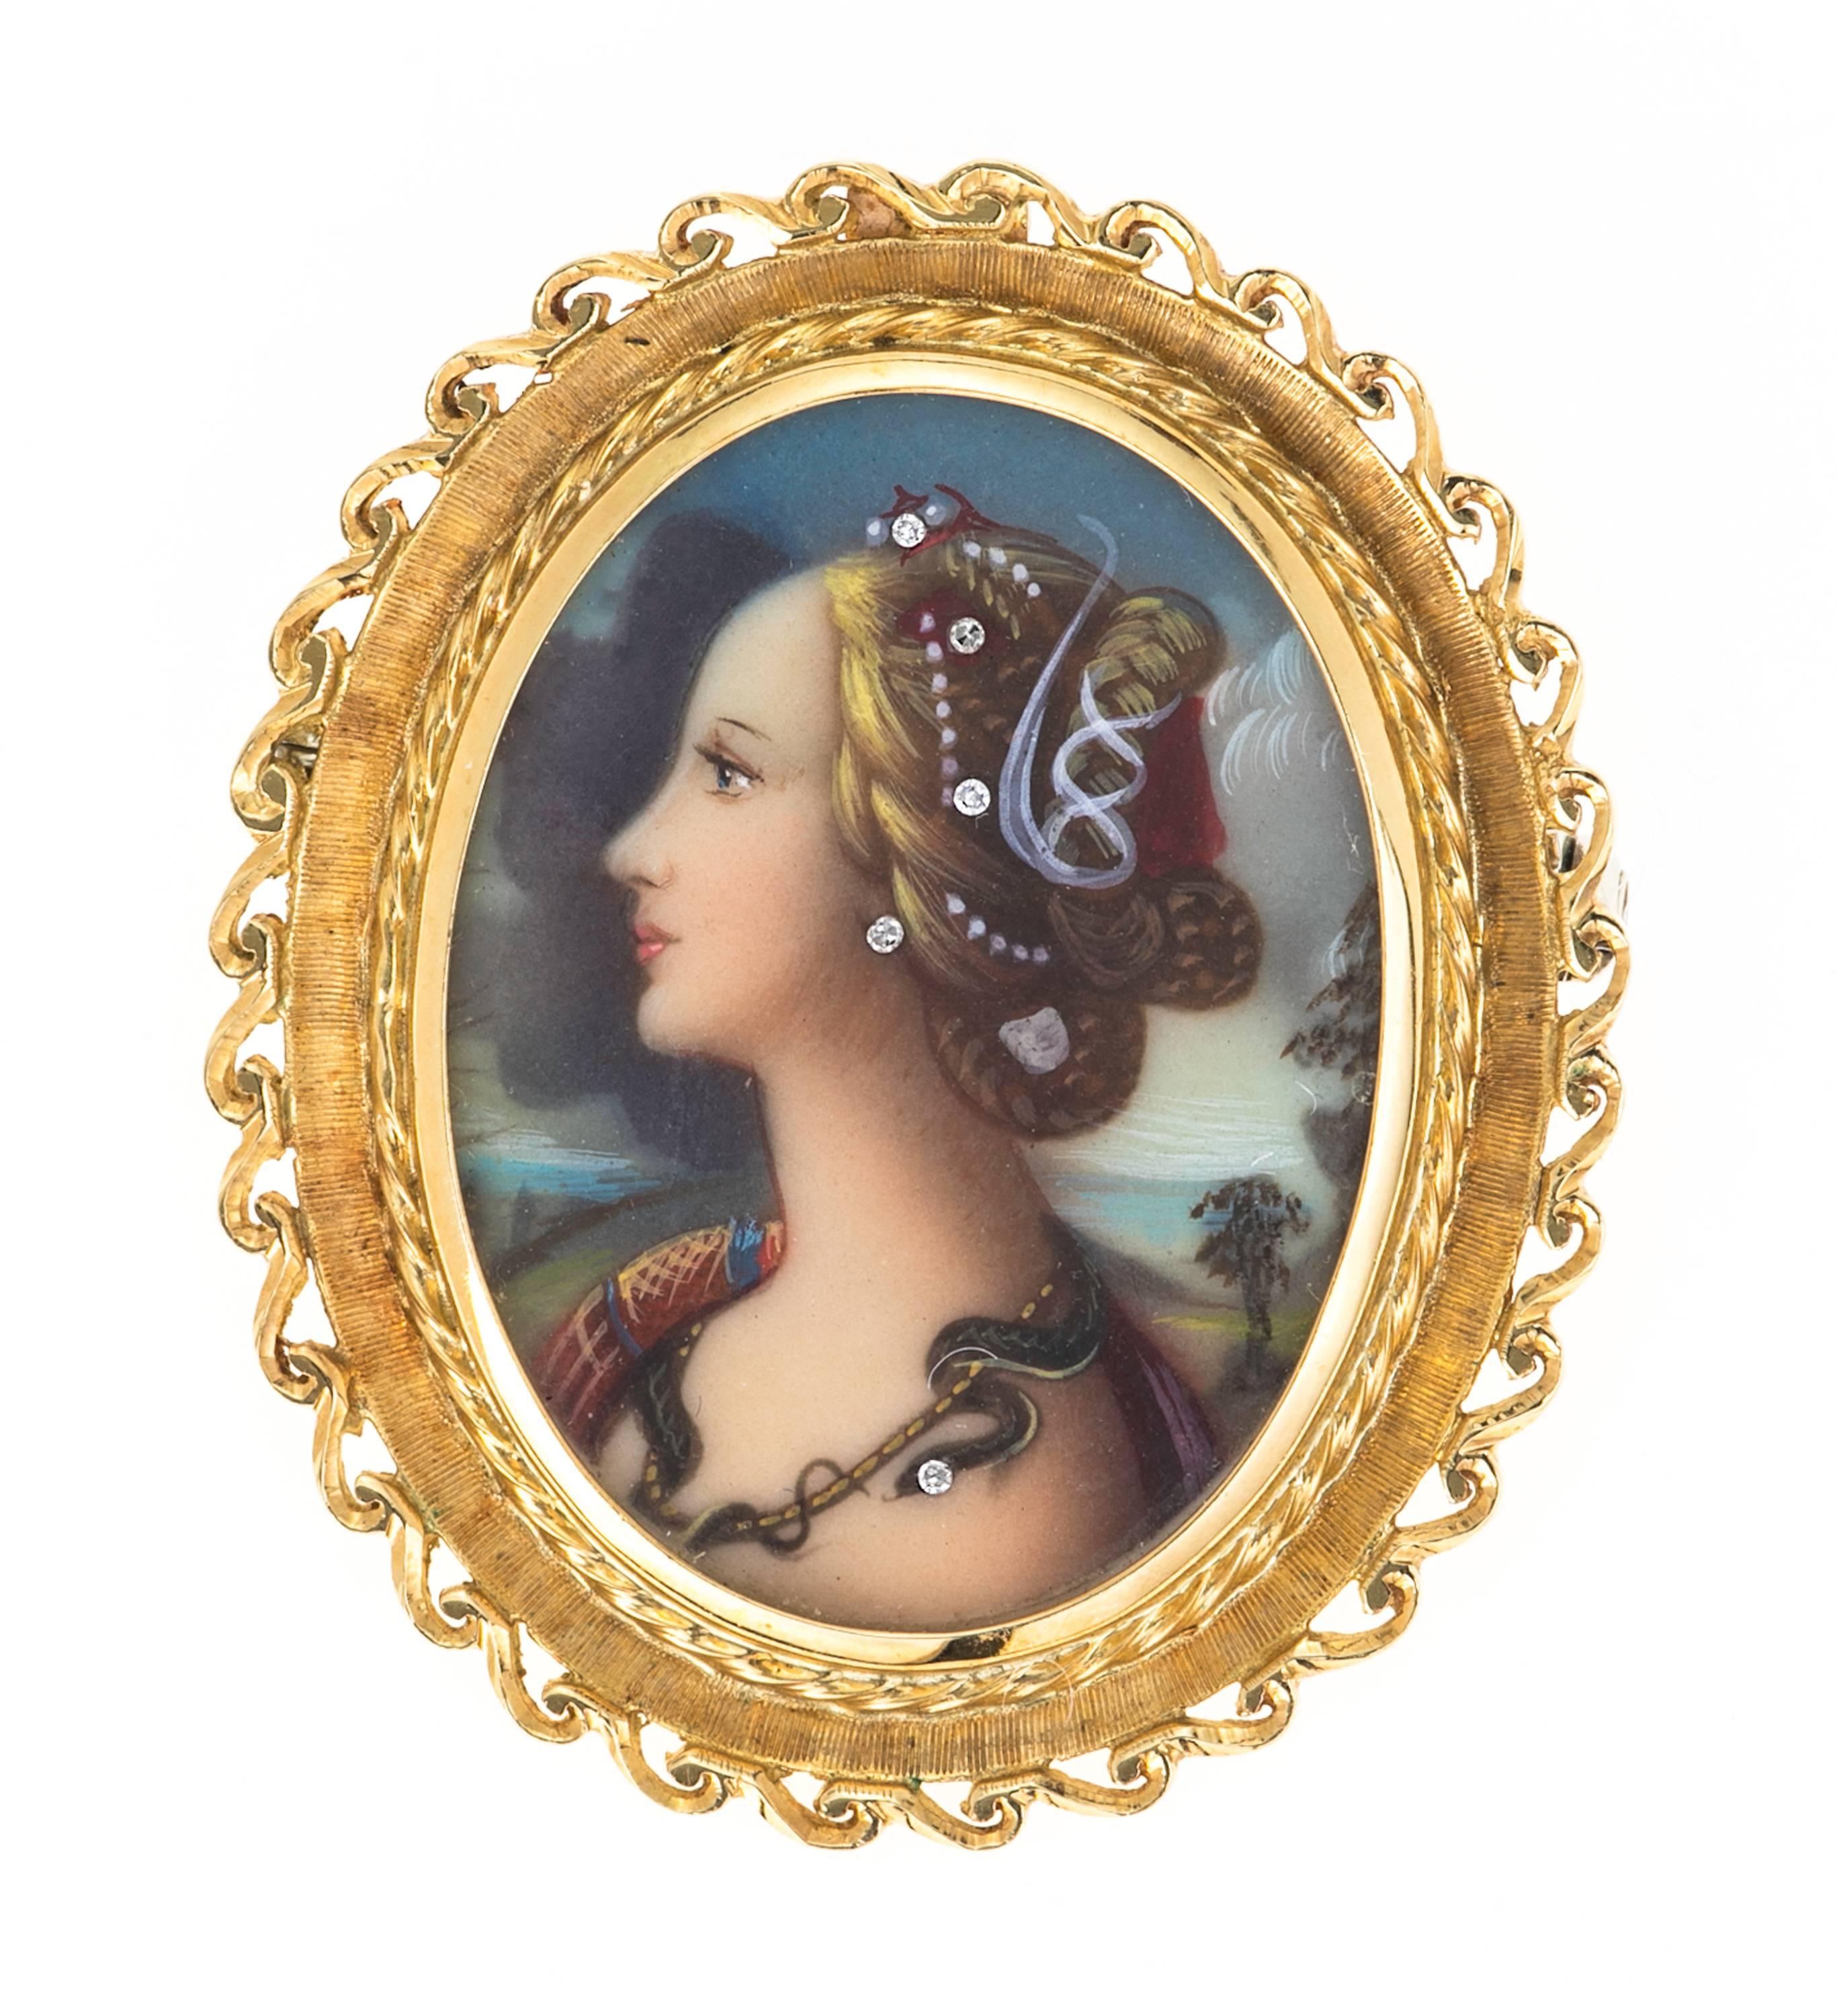 Schöner Rahmen aus 18-karätigem Gold um das kunstvoll gemalte Porträt einer schönen Dame, geschmückt mit fünf Diamanten.  Ein wunderbares Beispiel für die Wiedergeburt der Renaissance.  Auf der Rückseite mit 750 gestempelt.   Kann als Halskette oder